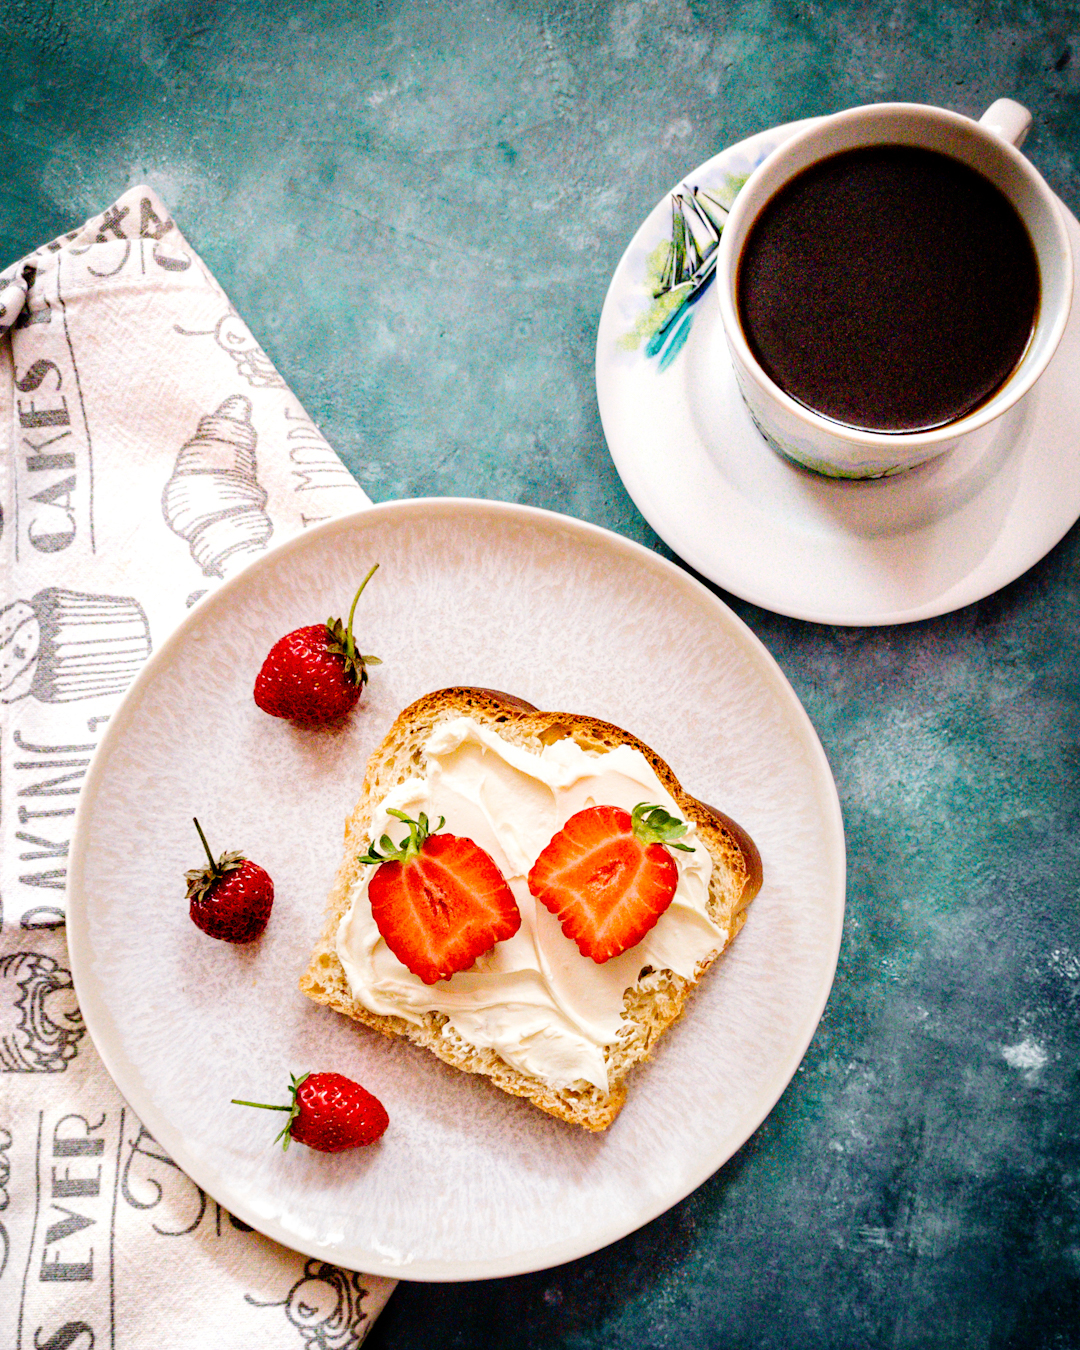 śniadanie - kromka chałki z serkiem mascarpone i truskawkami, obok kawa